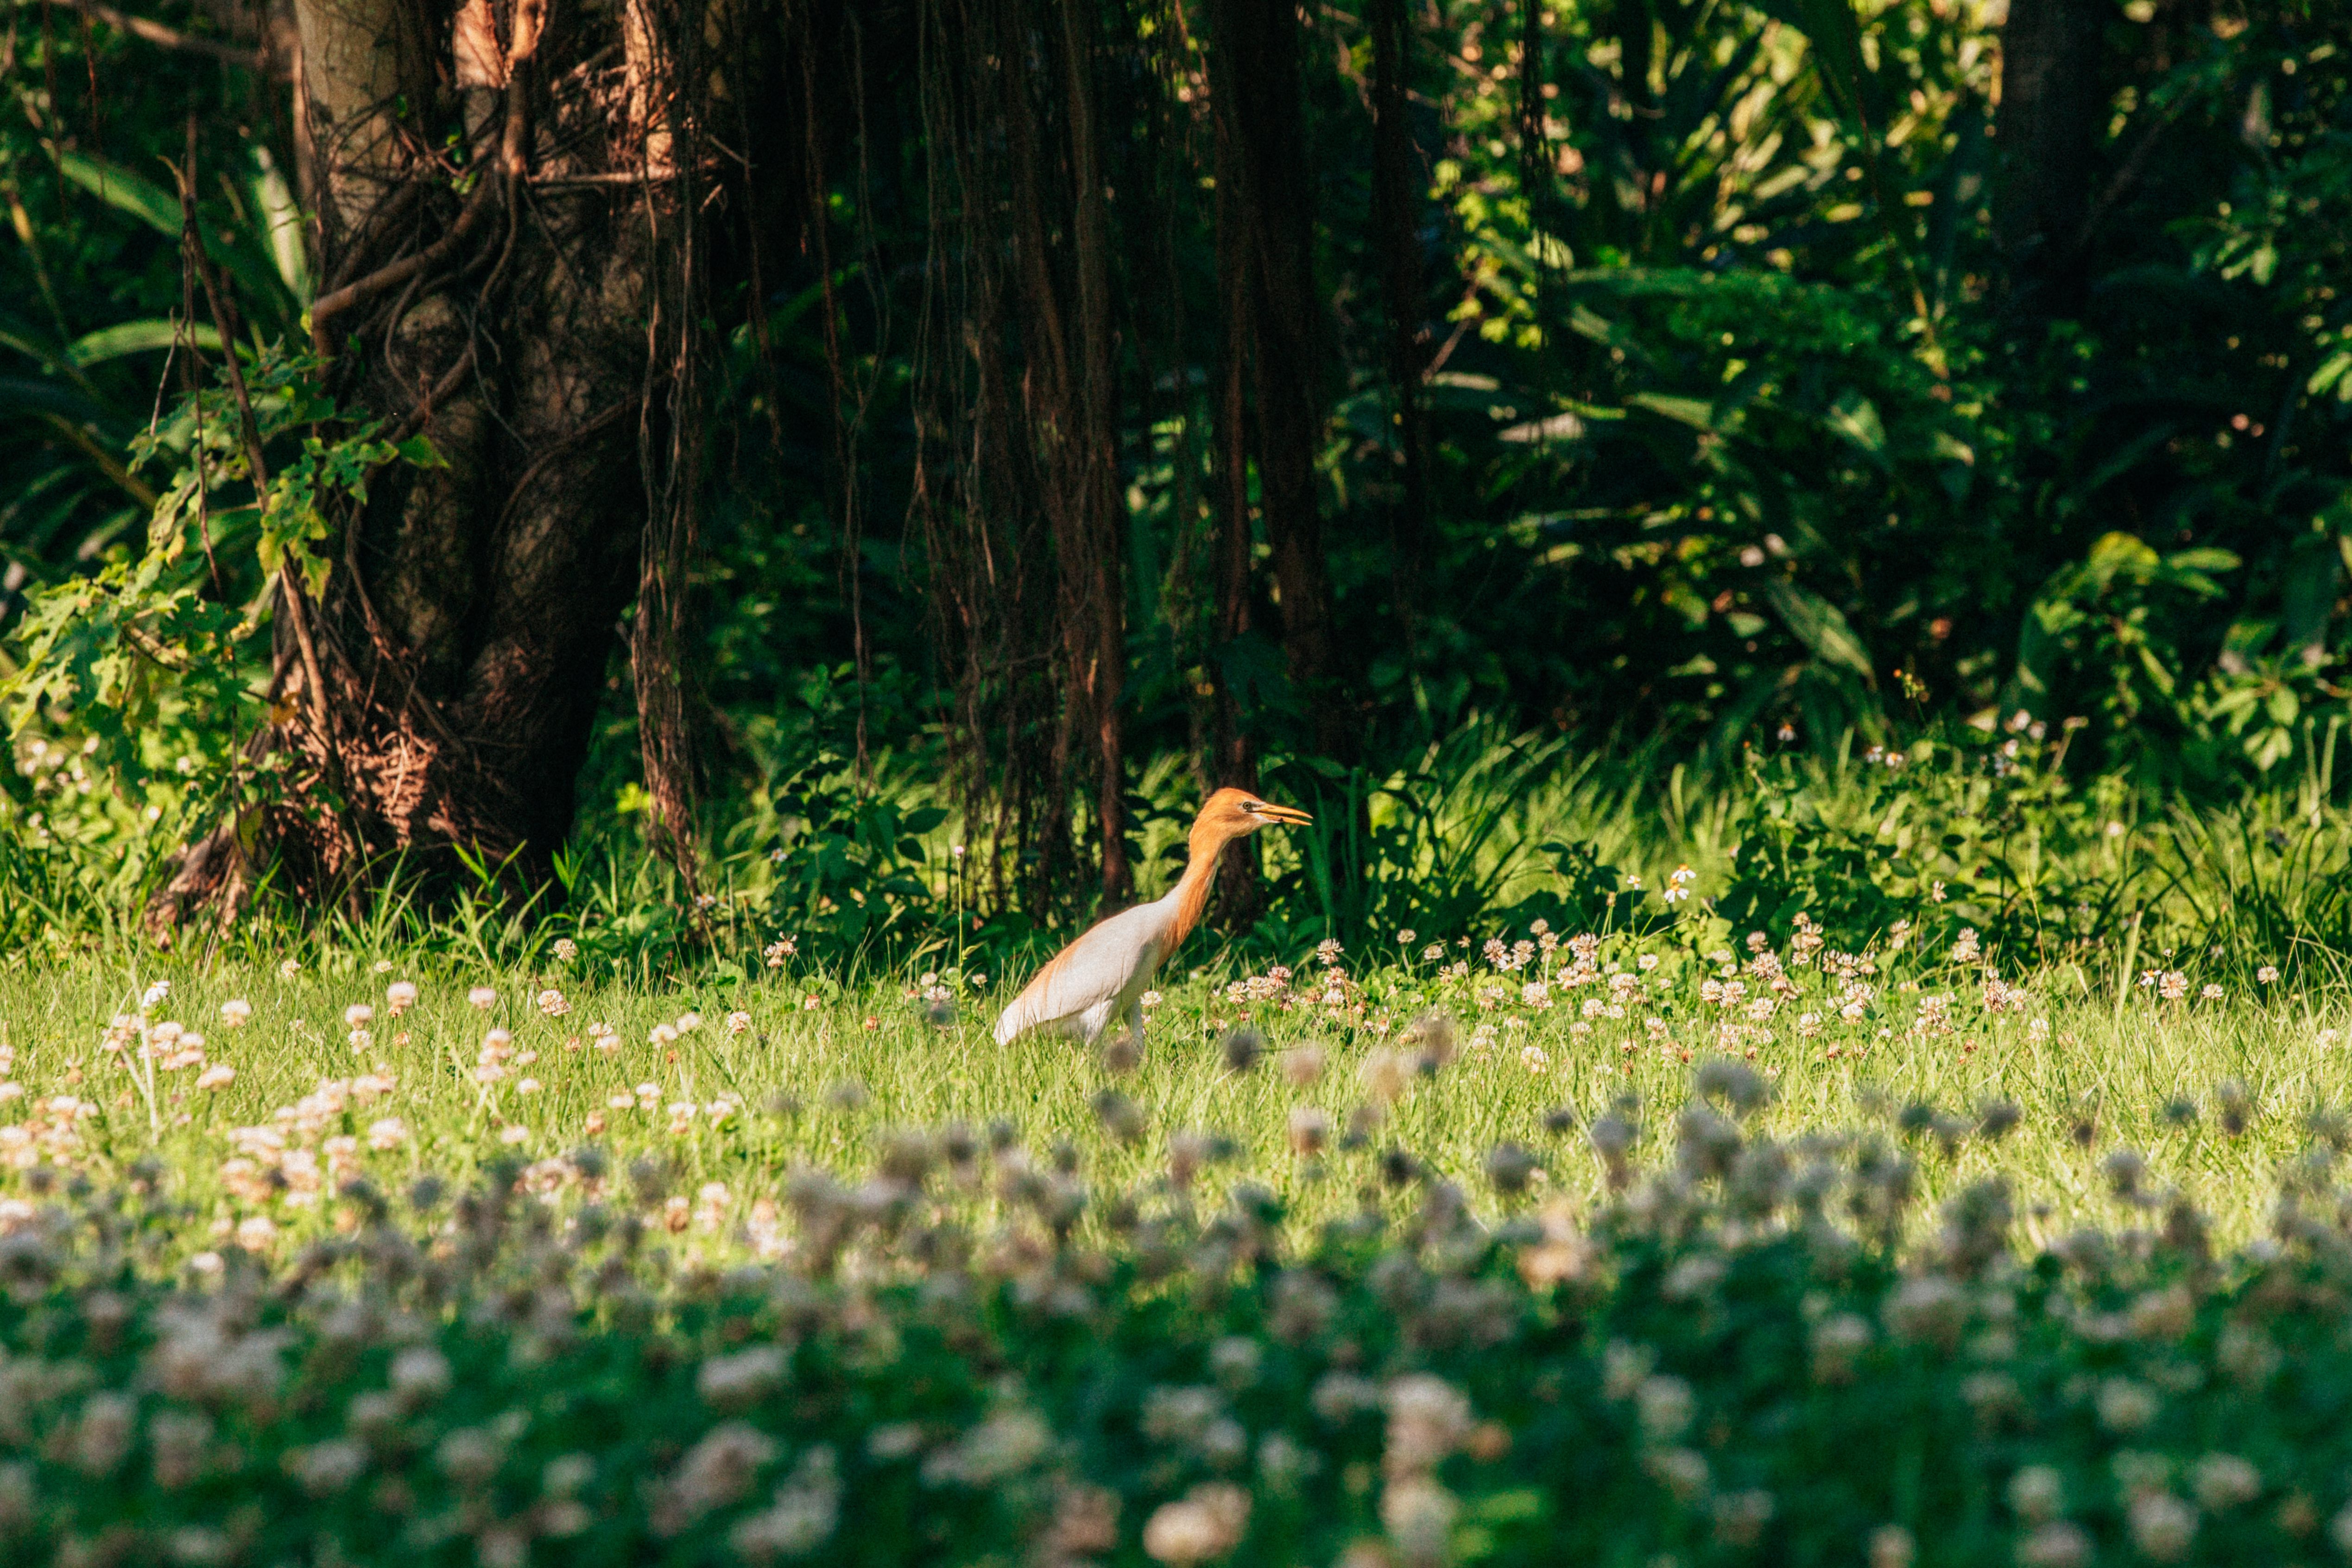 關渡自然公園是臺北市賞鳥的絕佳景點。